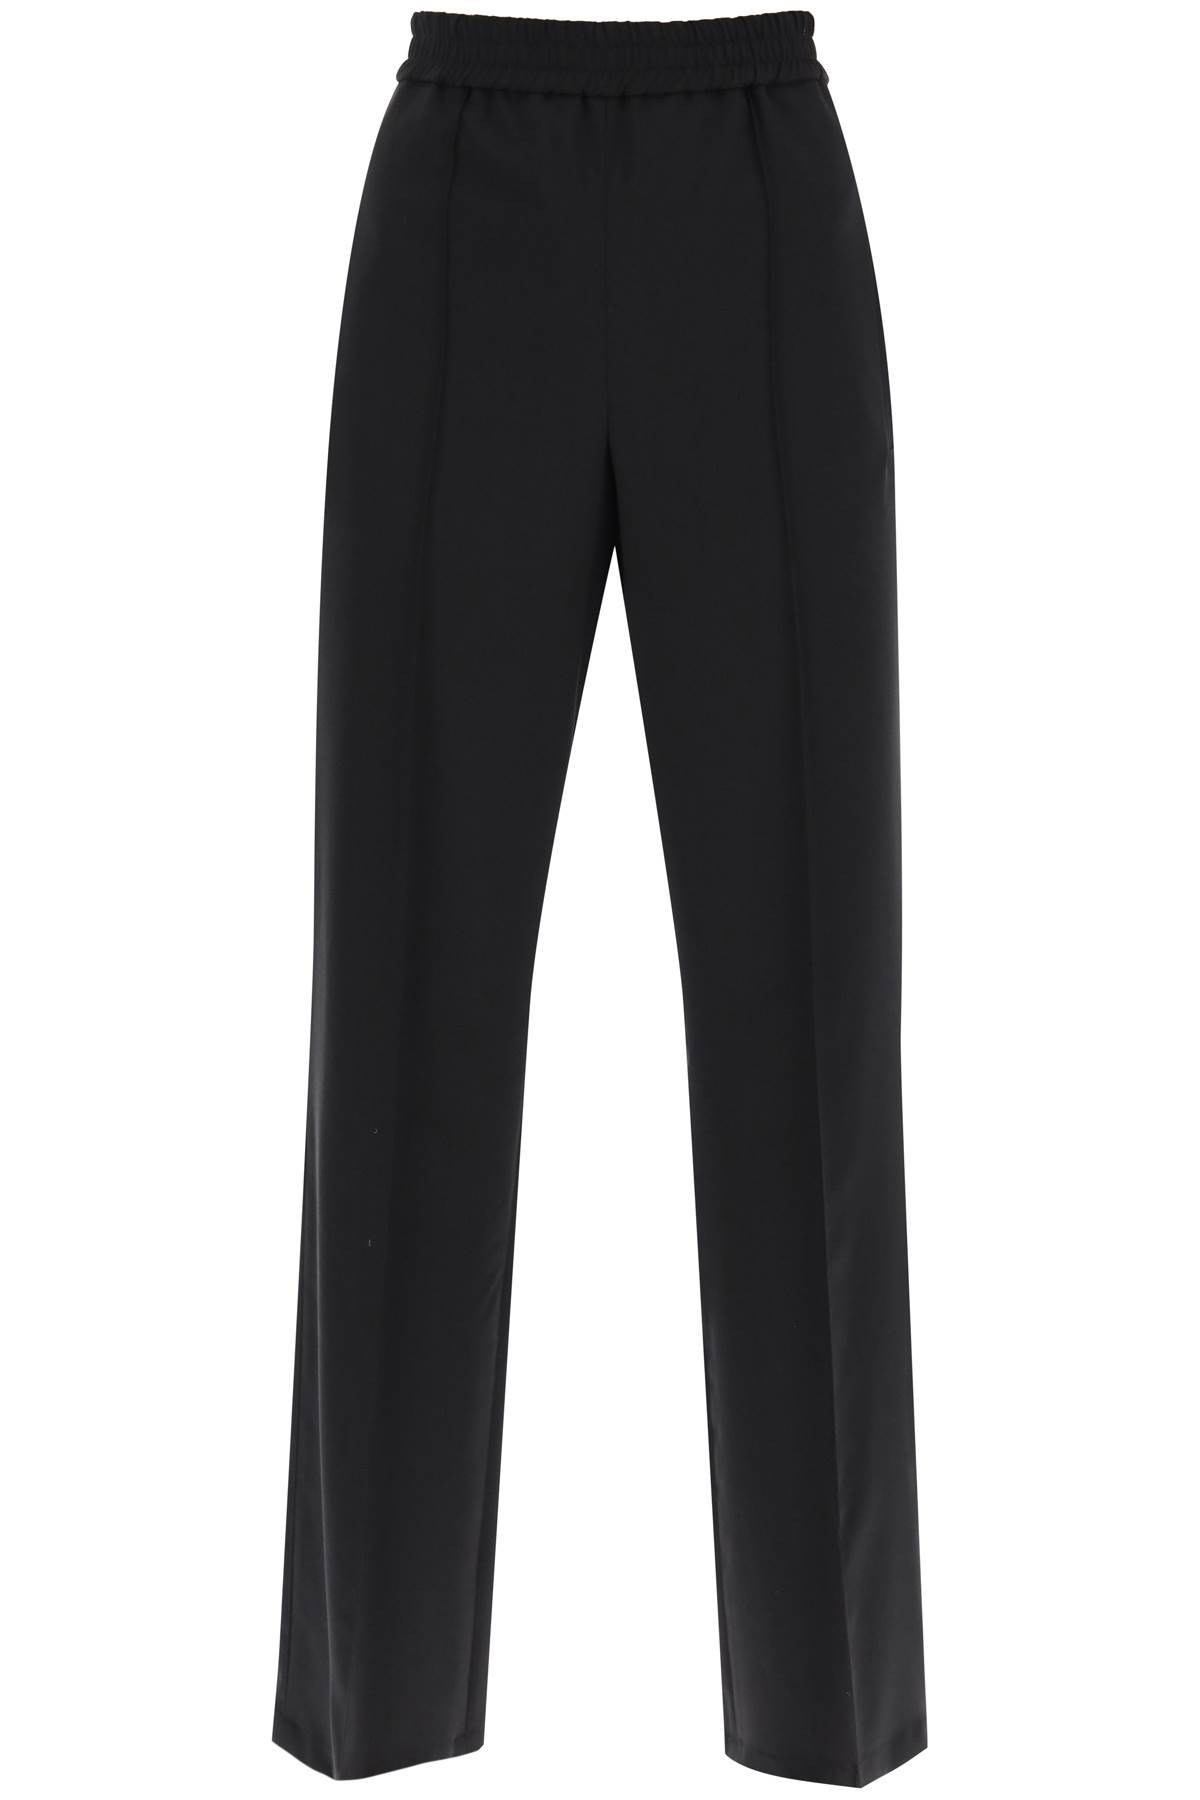 Loewe Pleated Wool Wide-leg Trousers In Black